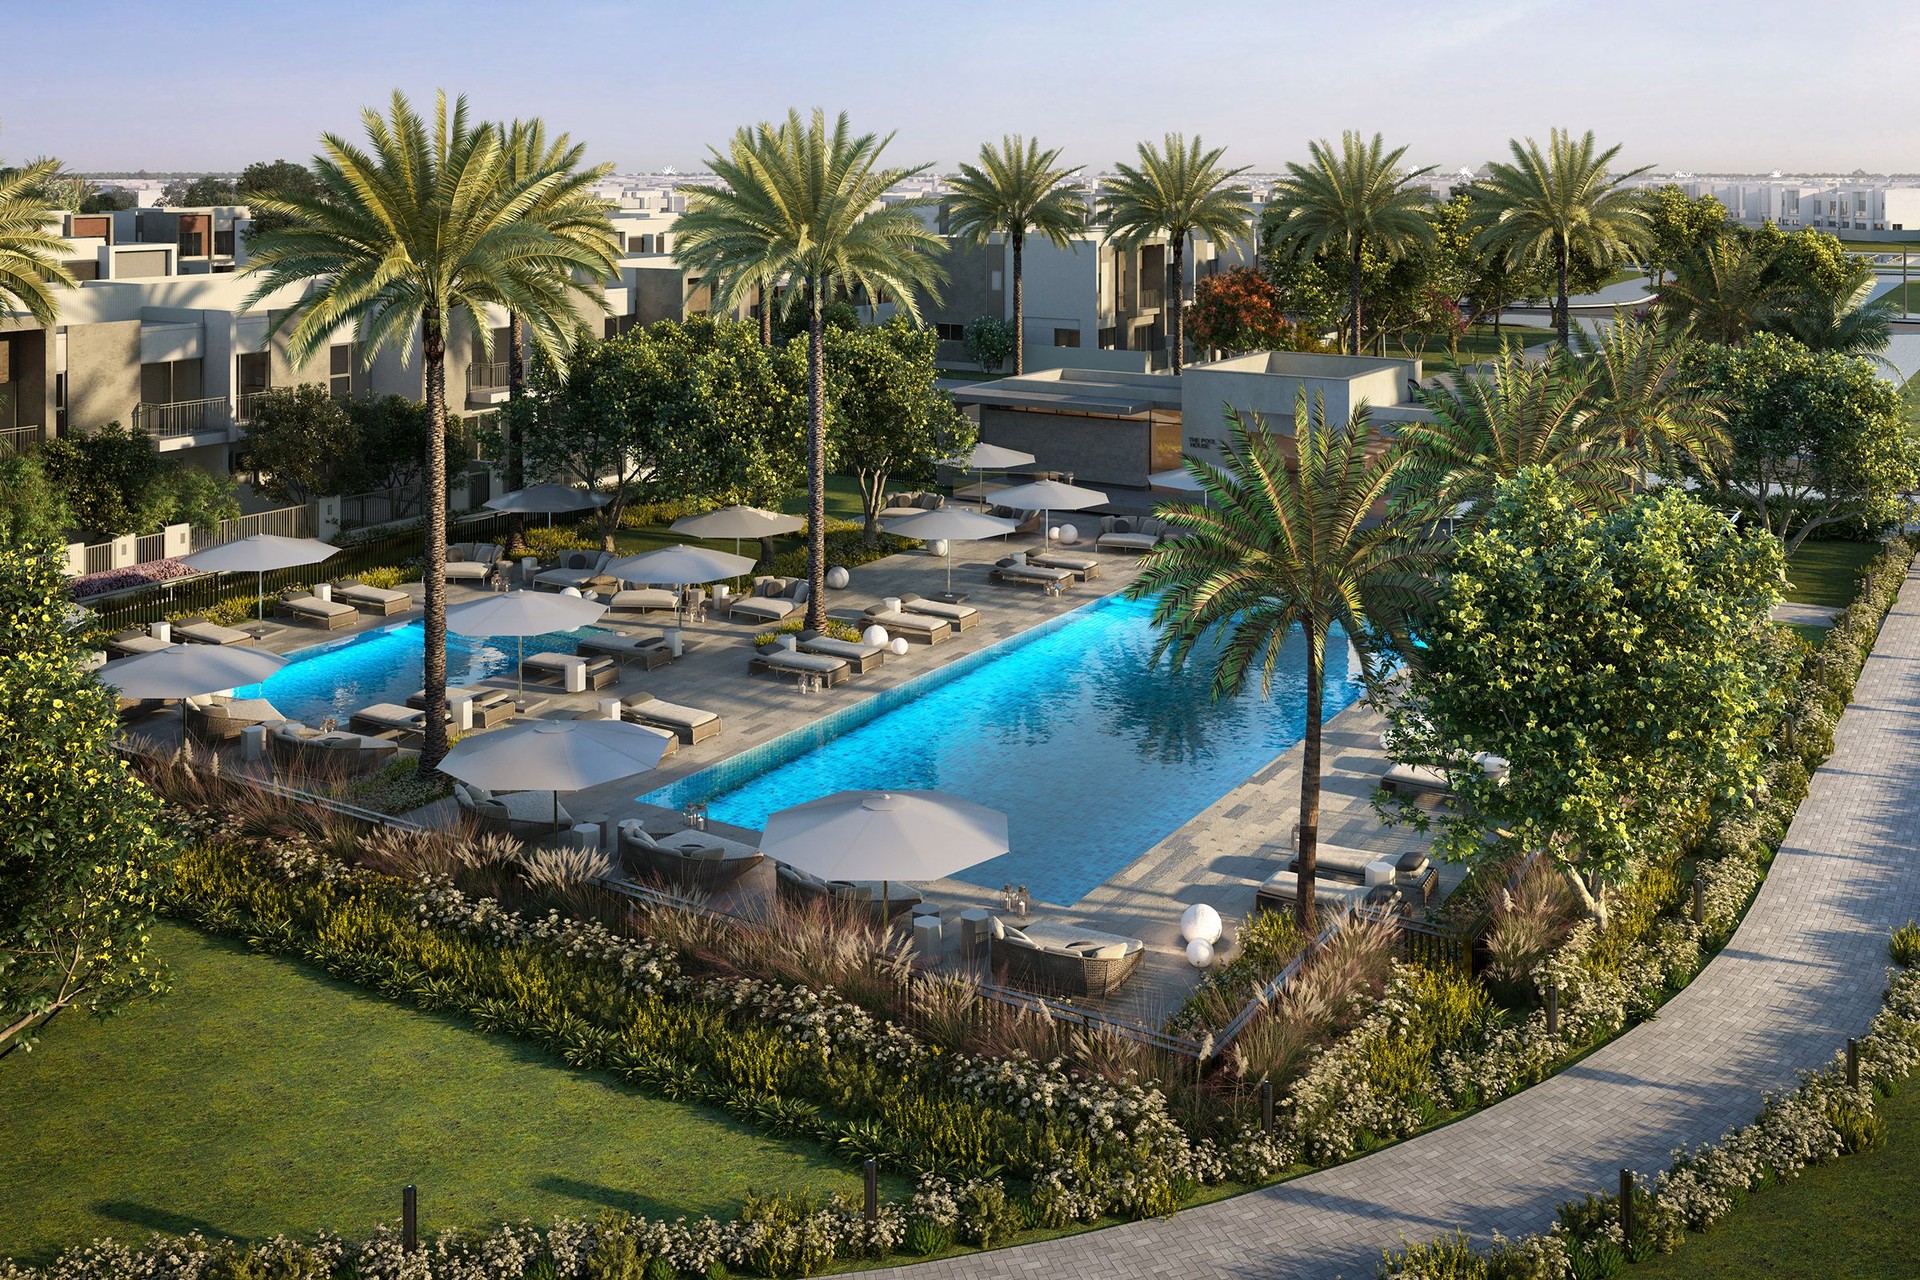 Luxury townhouse with garden in Villanova, Dubailand: Image 1